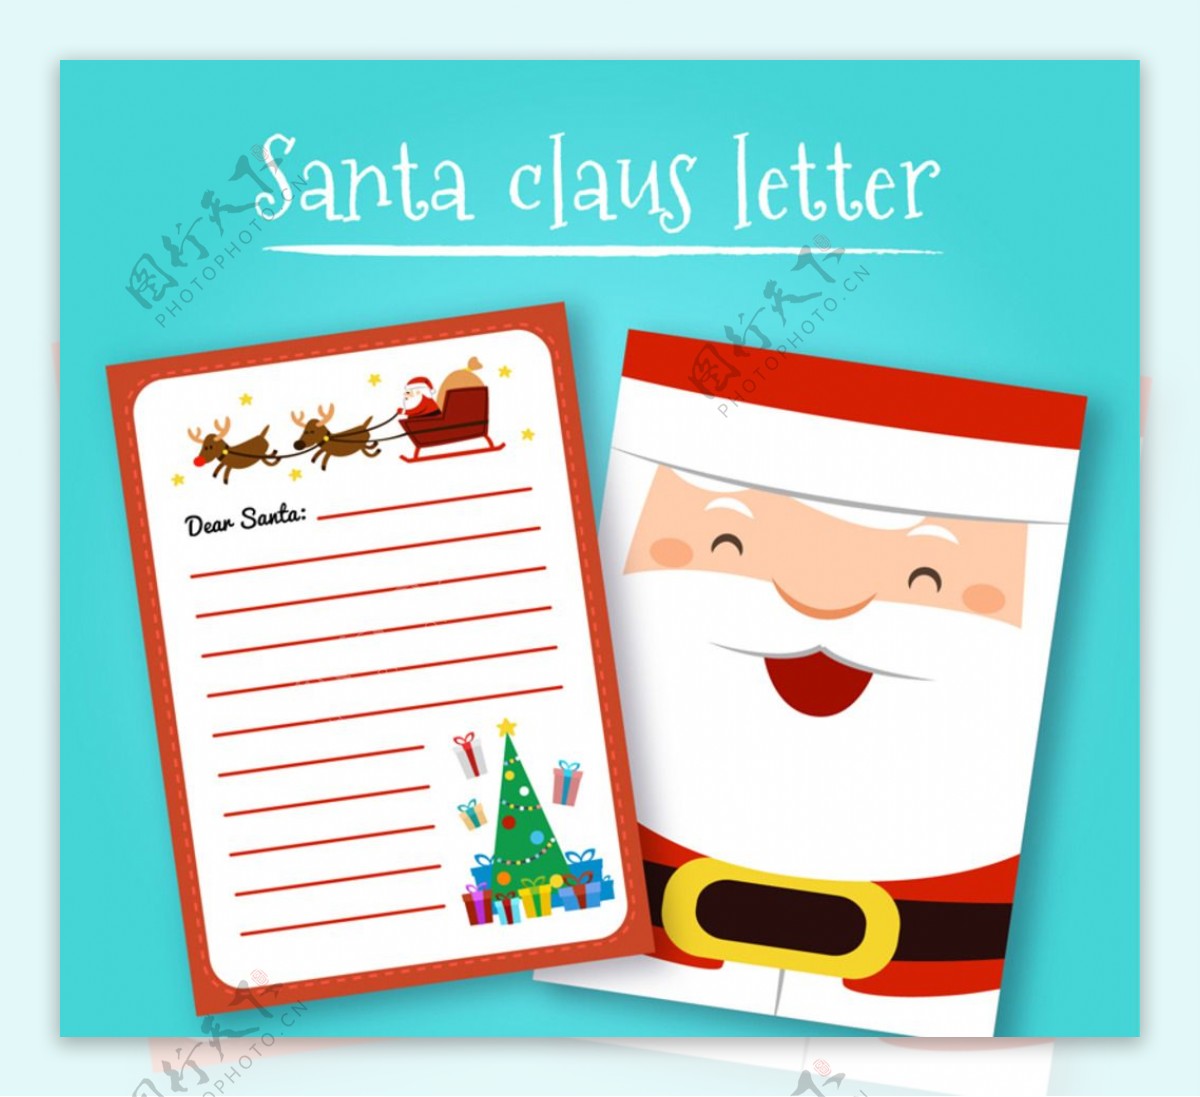 卡通圣诞老人信纸矢量素材